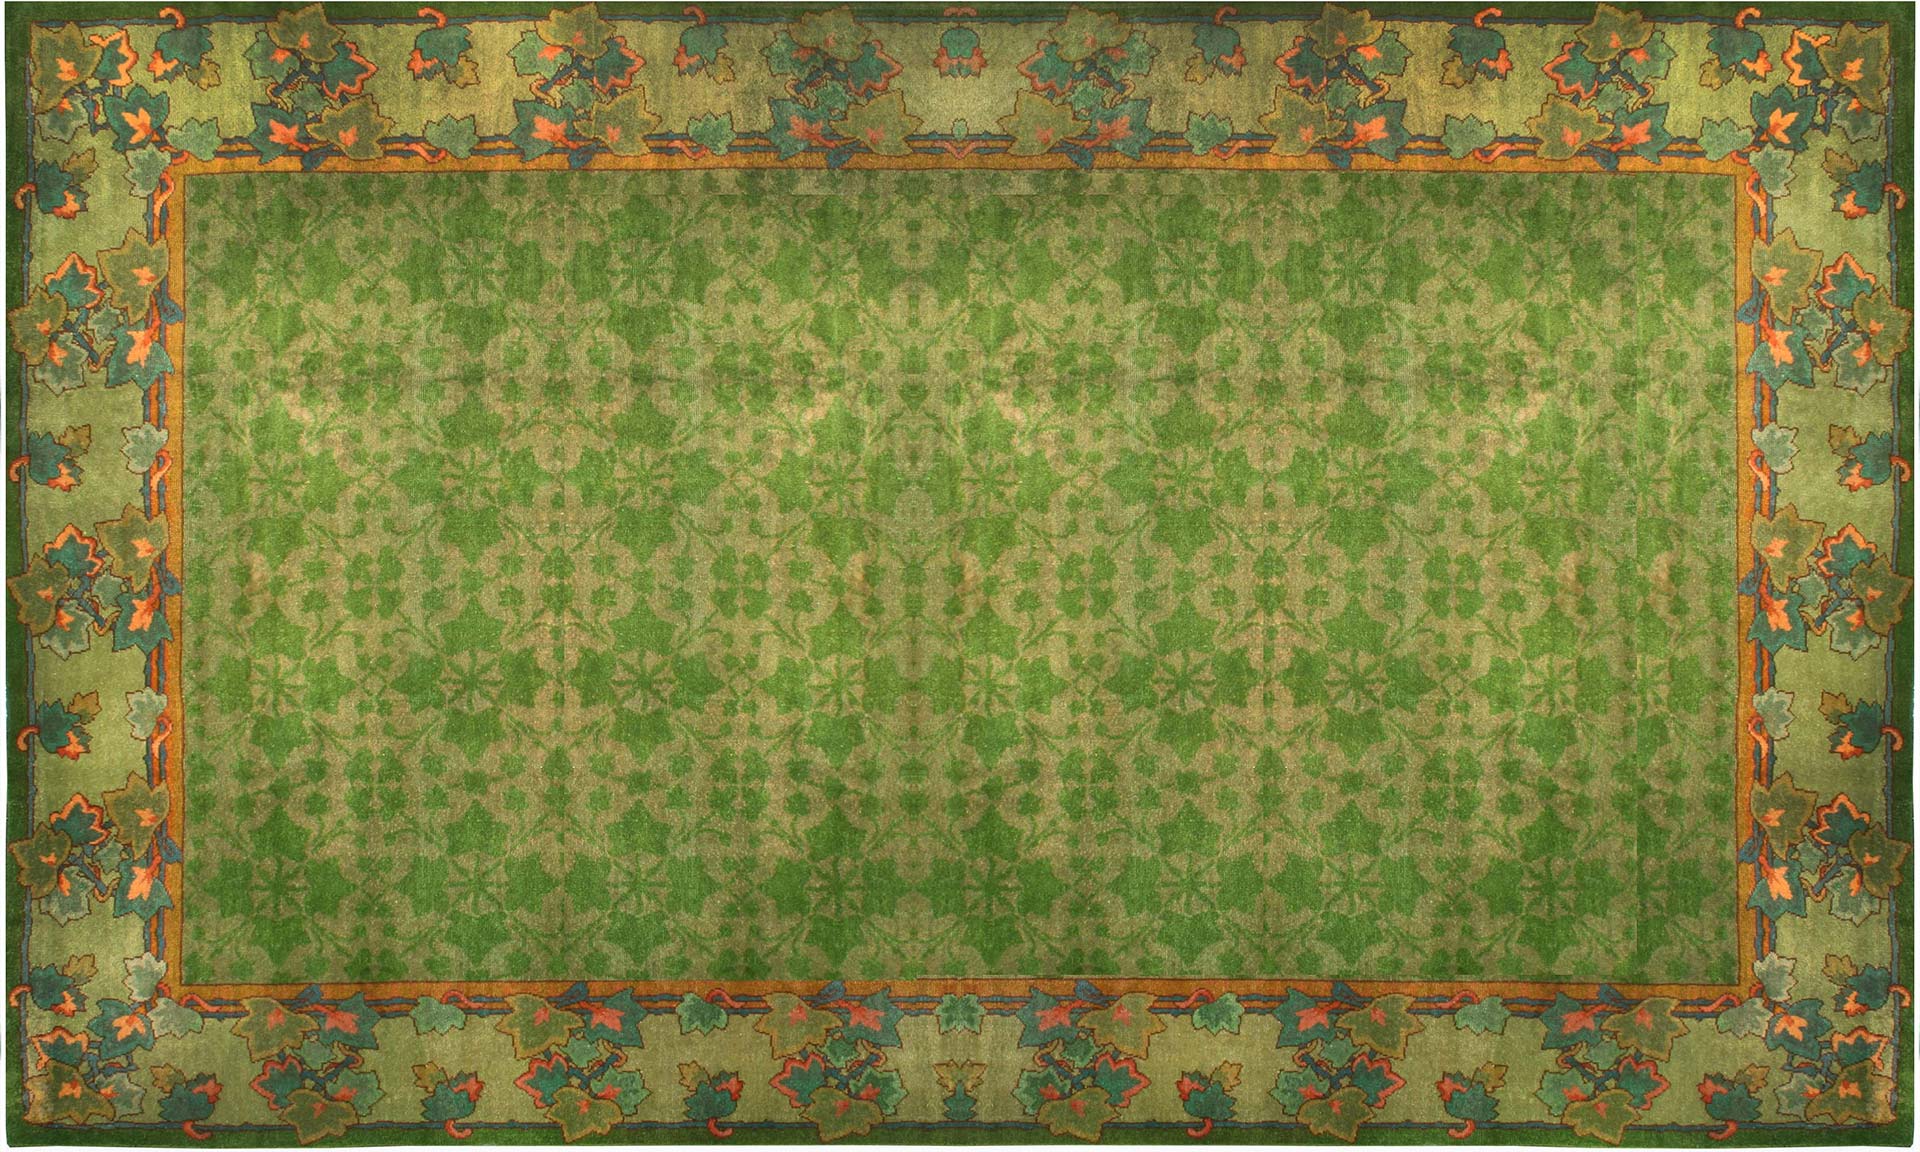 Ein kleeblattfarbener irischer Donegal-Teppich aus der Doris Leslie Blau Collection. Ca. 1880, Irland. Größe des Teppichs: 13'4